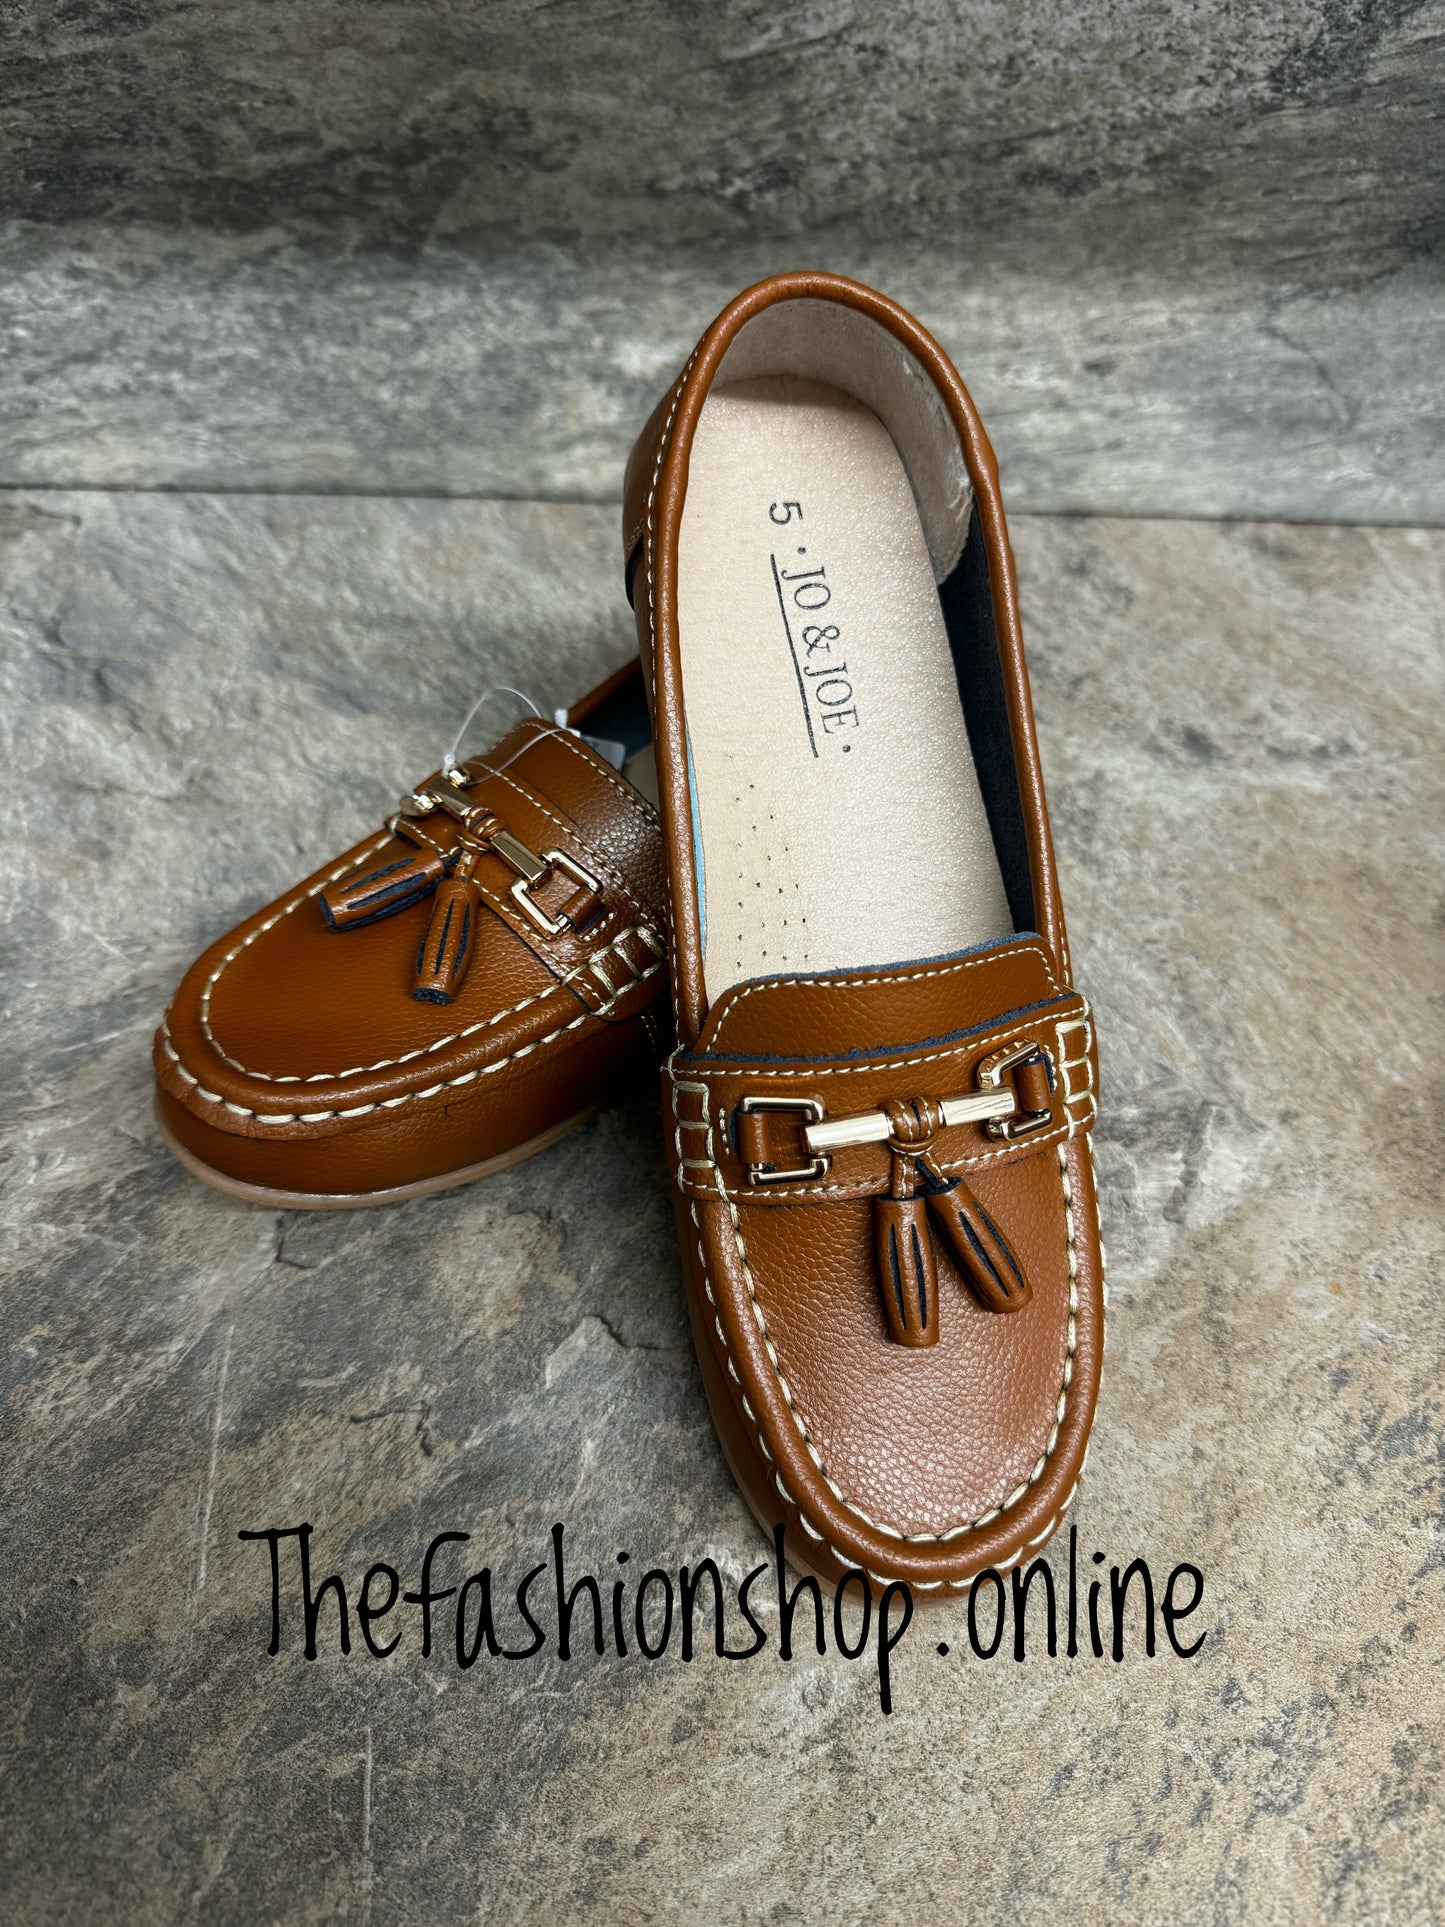 Jo & Joe Nautical wide fit leather tan loafer 4-8